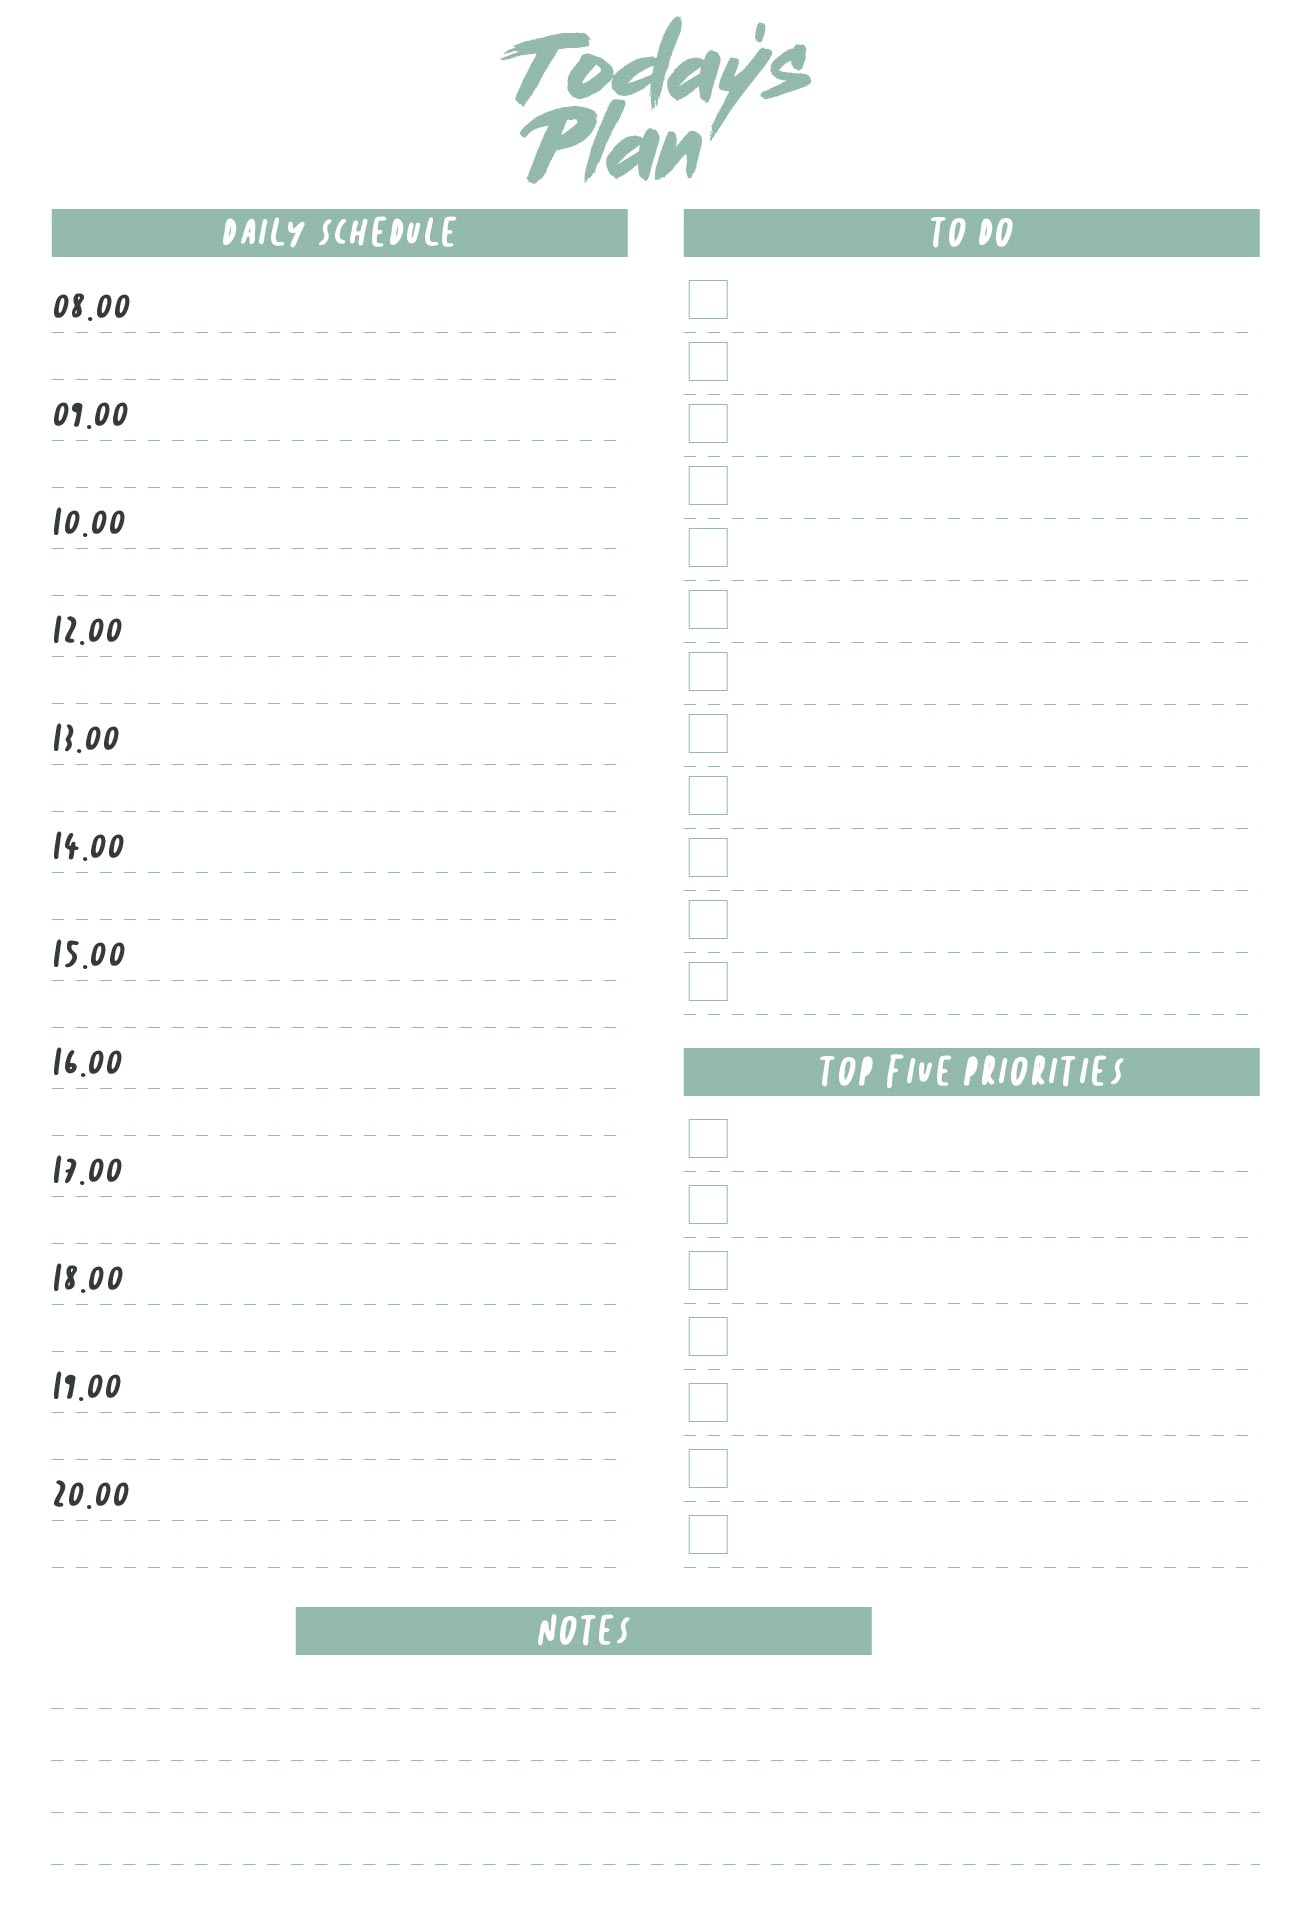 10 Best Weekly Hourly Calendar Printable